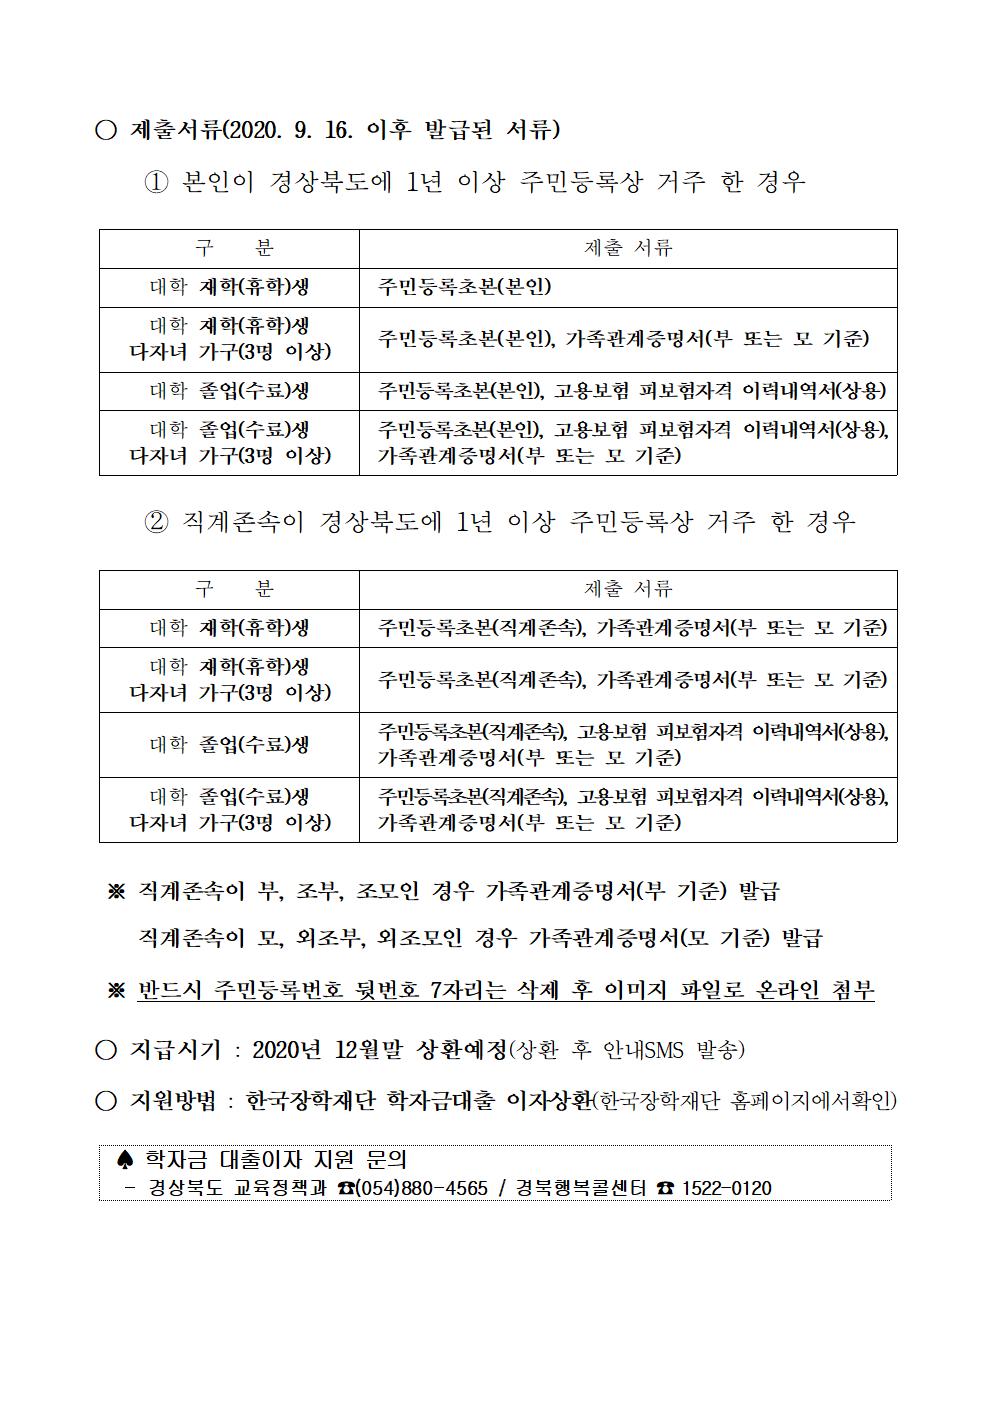 2020-2 경상북도 대학생 학자금대출 이자지원 신청안내